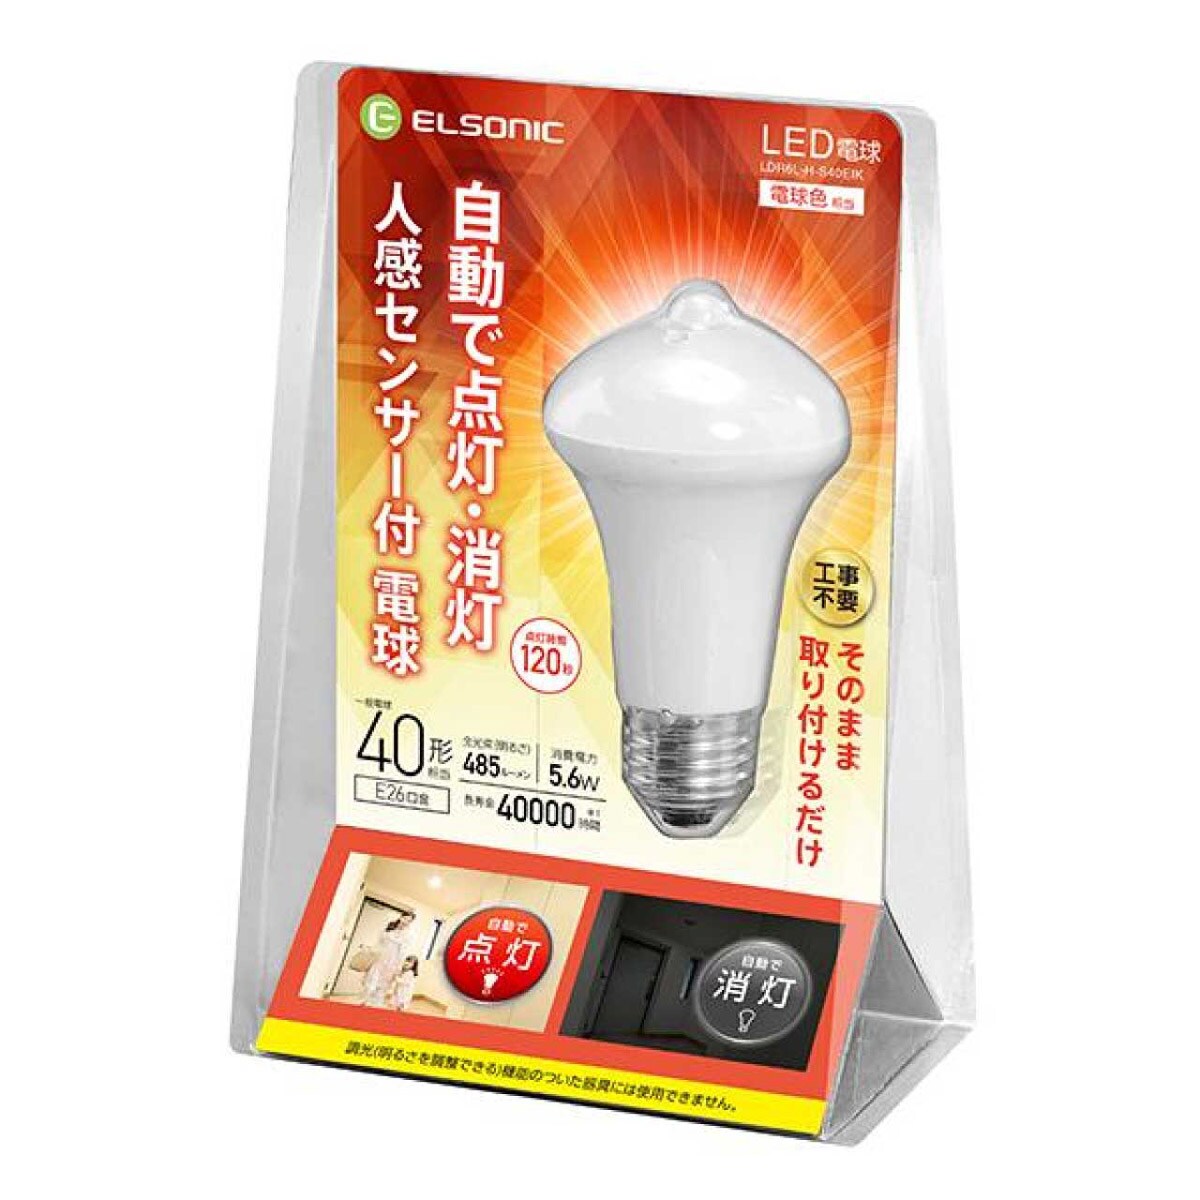 人感センサー電球LED 40w E26 3個セット